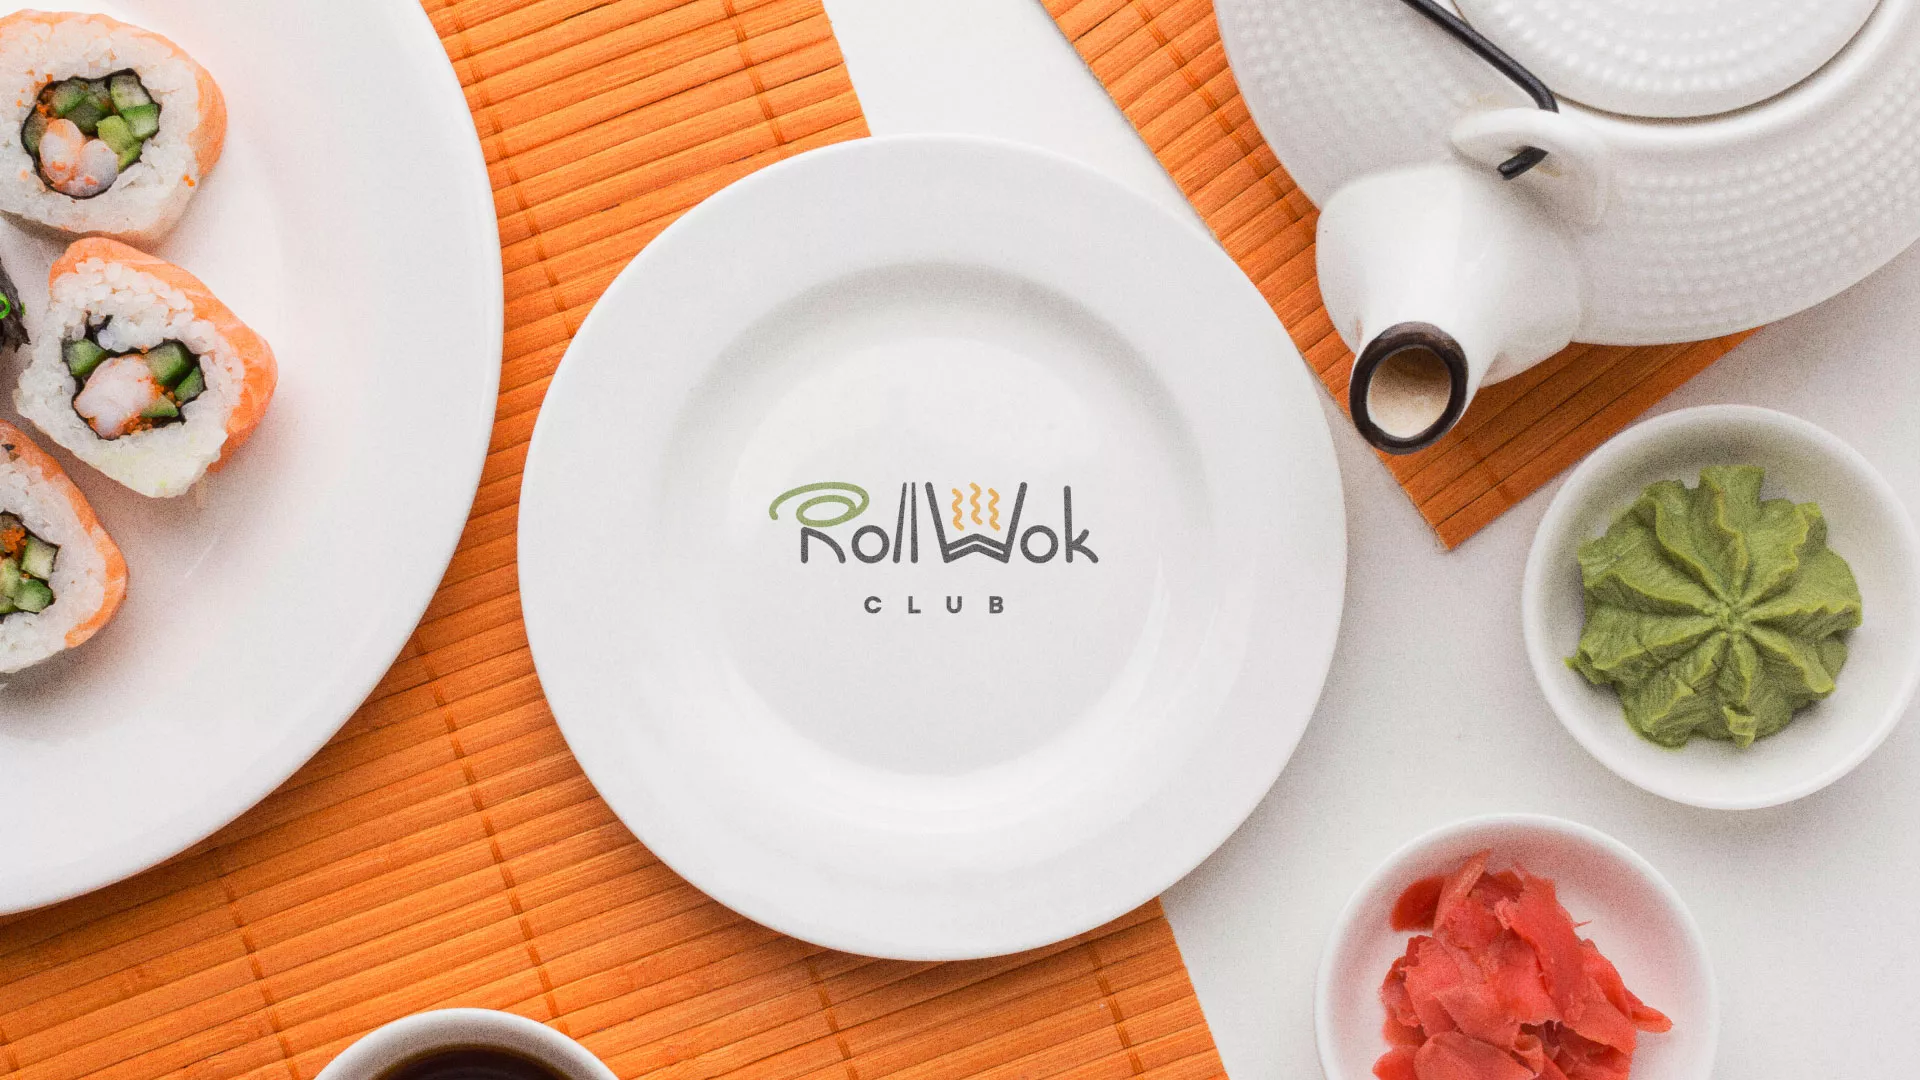 Разработка логотипа и фирменного стиля суши-бара «Roll Wok Club» в Жуковском